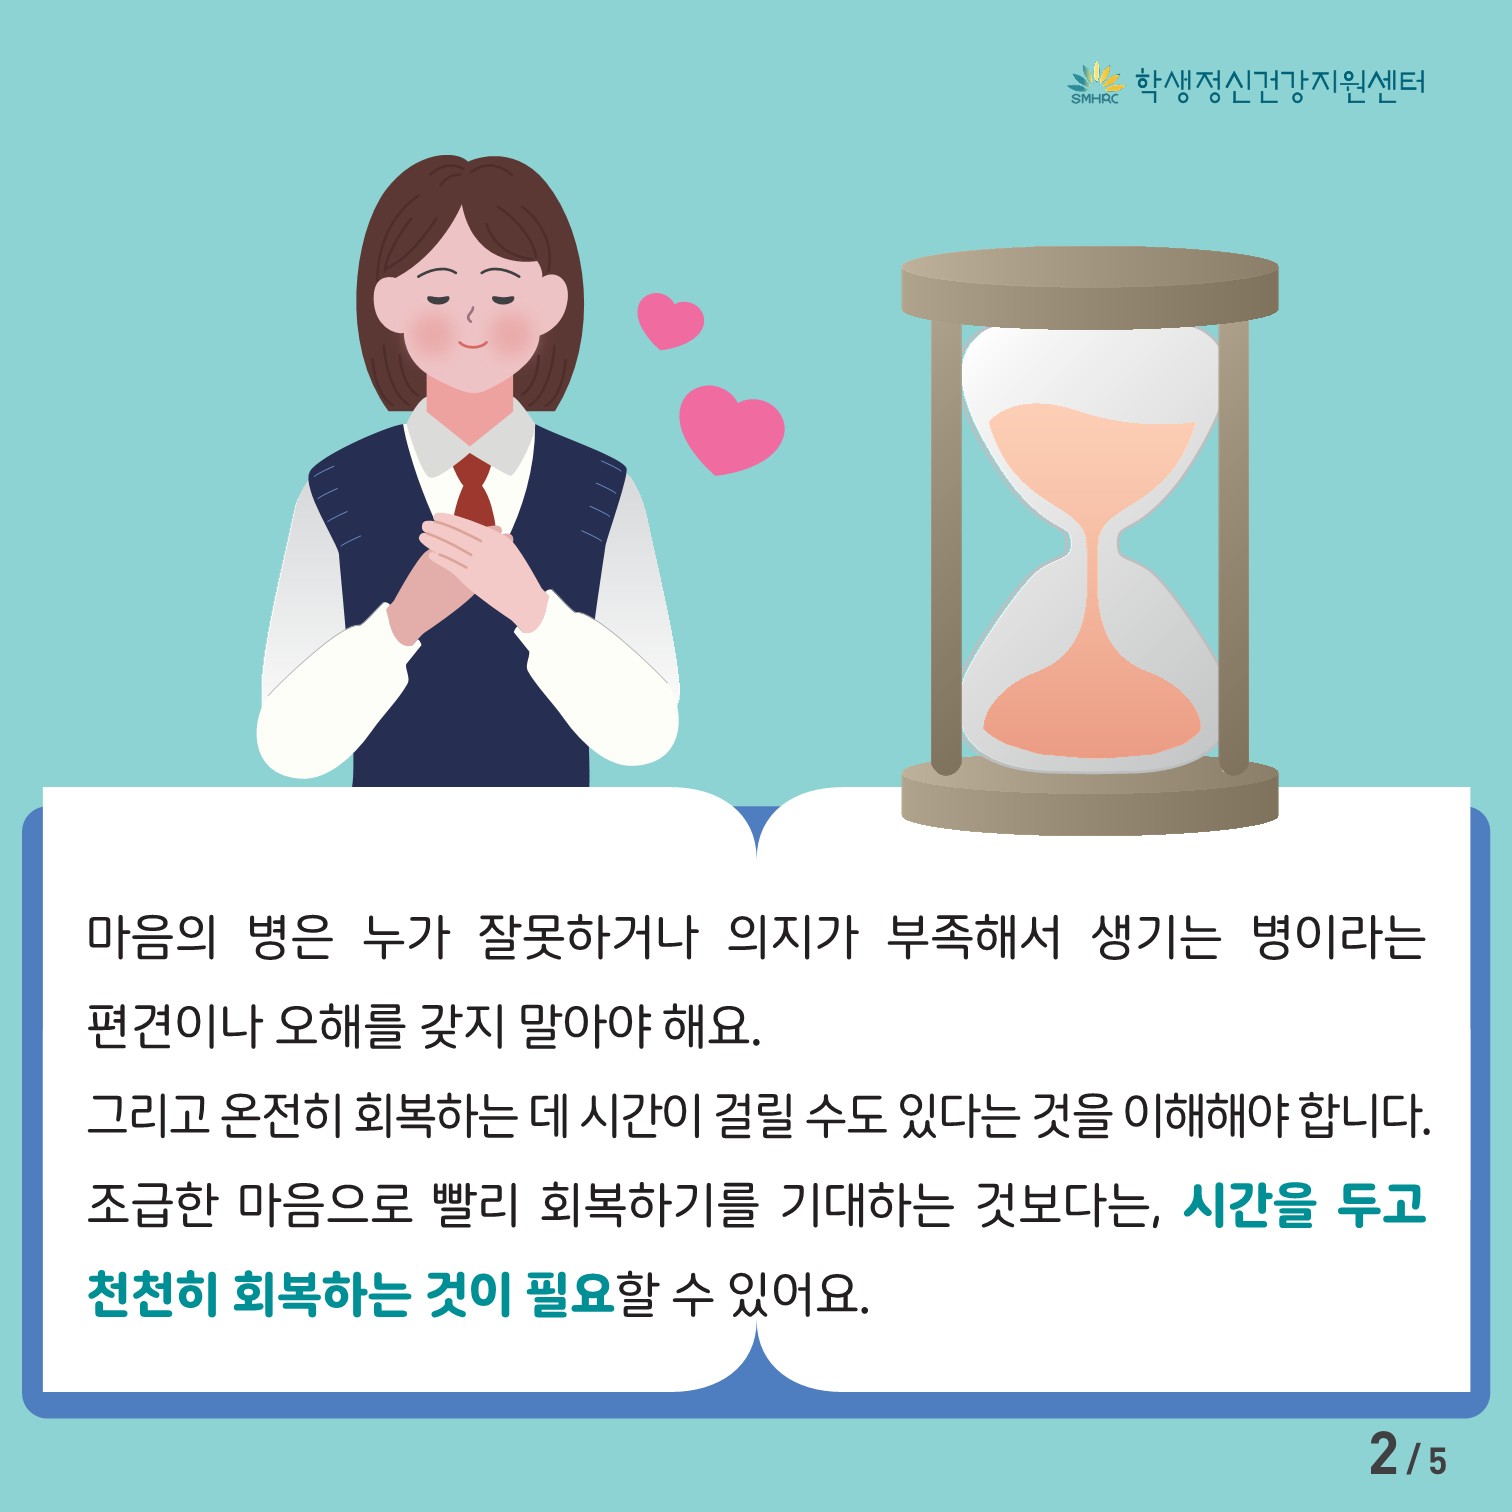 [중고등학생용] 카드뉴스 제 2023 - 9호(회복하기)_2